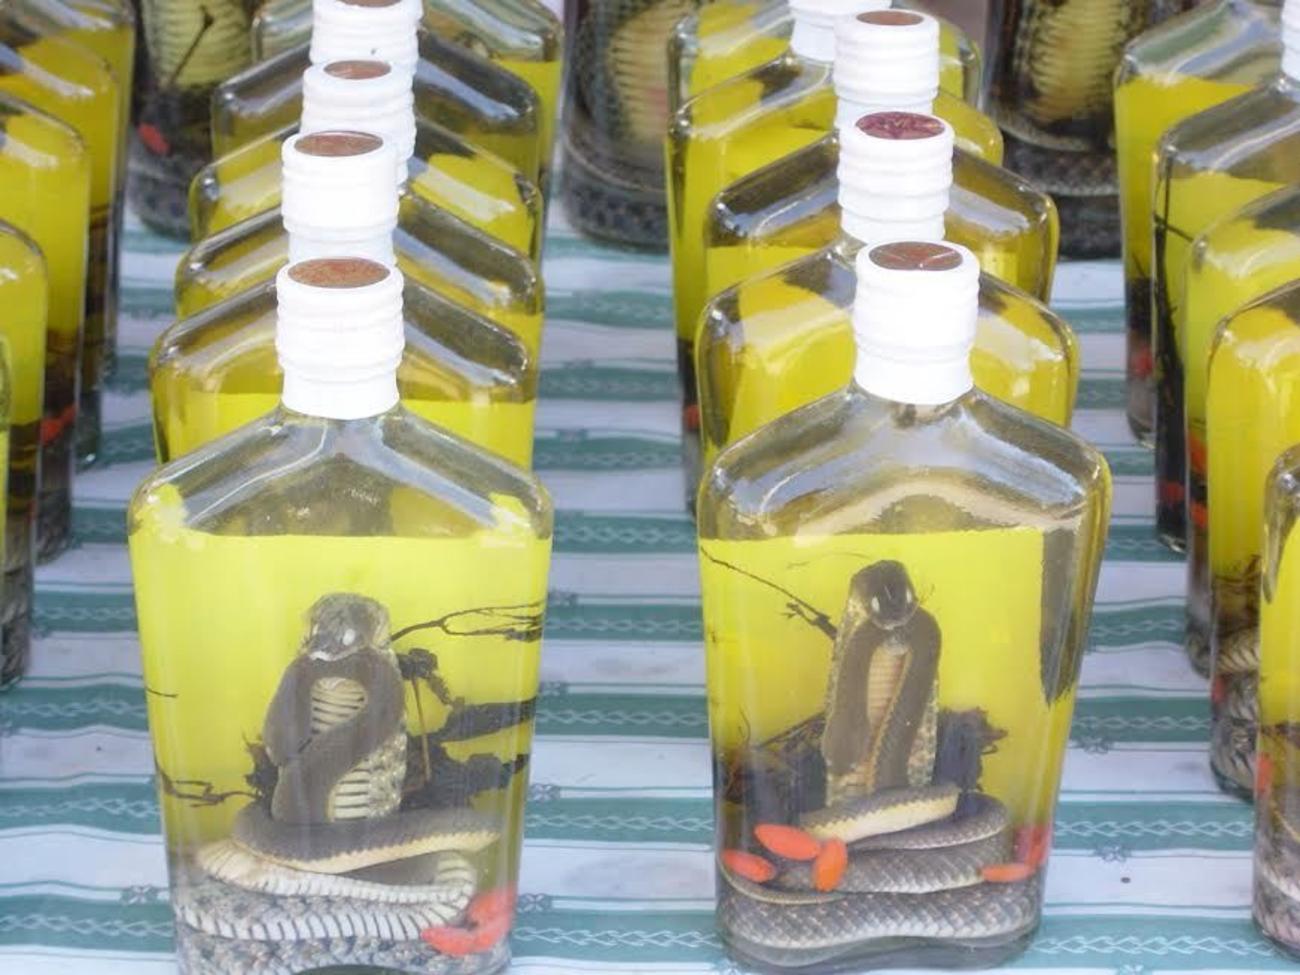 Palm Wine, a legal alternative souvenir to Snake Wine.